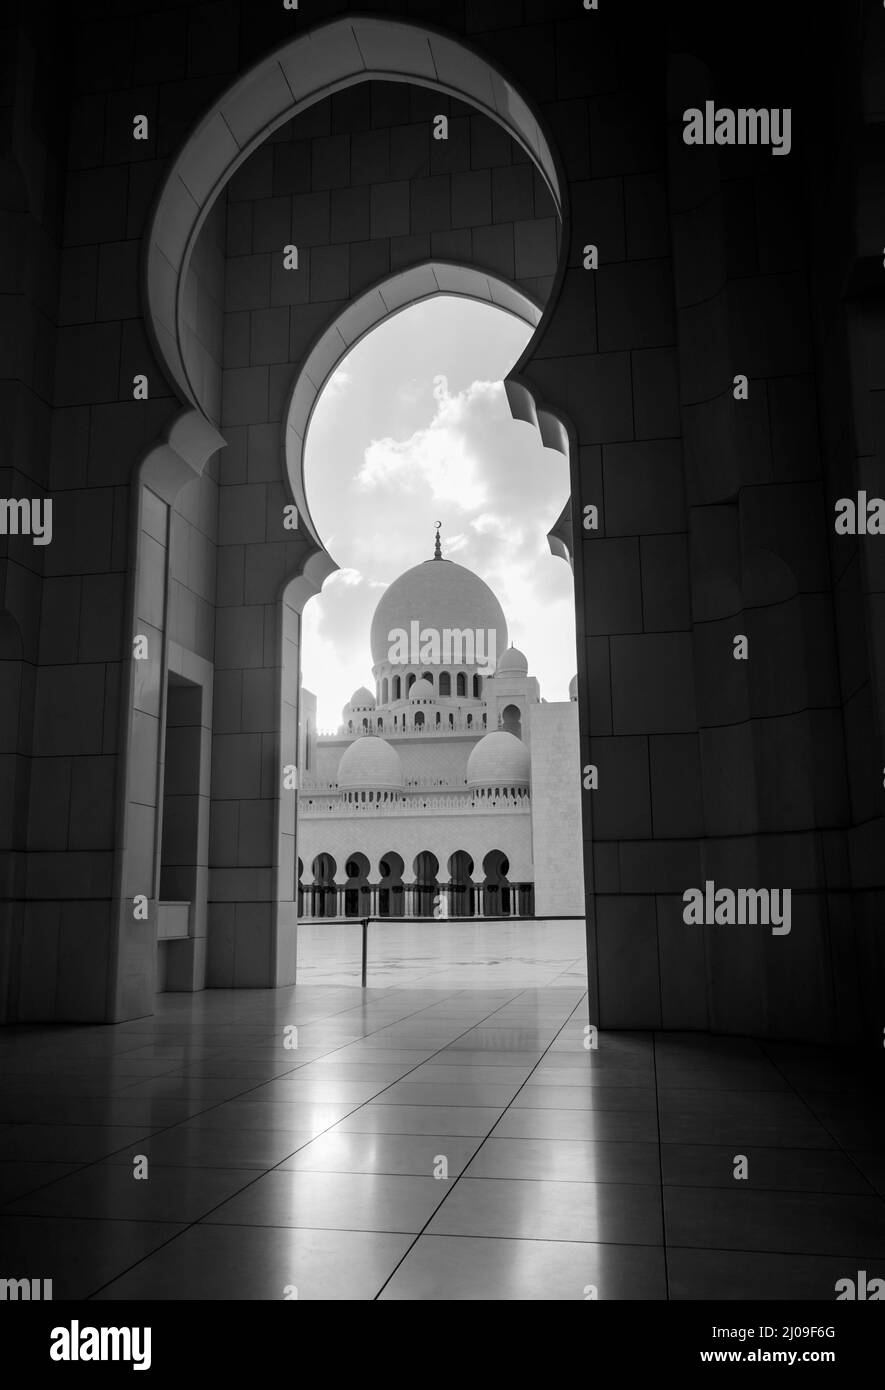 Ein Blick auf eine Kuppel der Scheich-Zayed-Moschee durch einen Bogen. Wunderschöne und prächtige Moschee aus Abu dhabi. Schwarzweiß-Foto Stockfoto